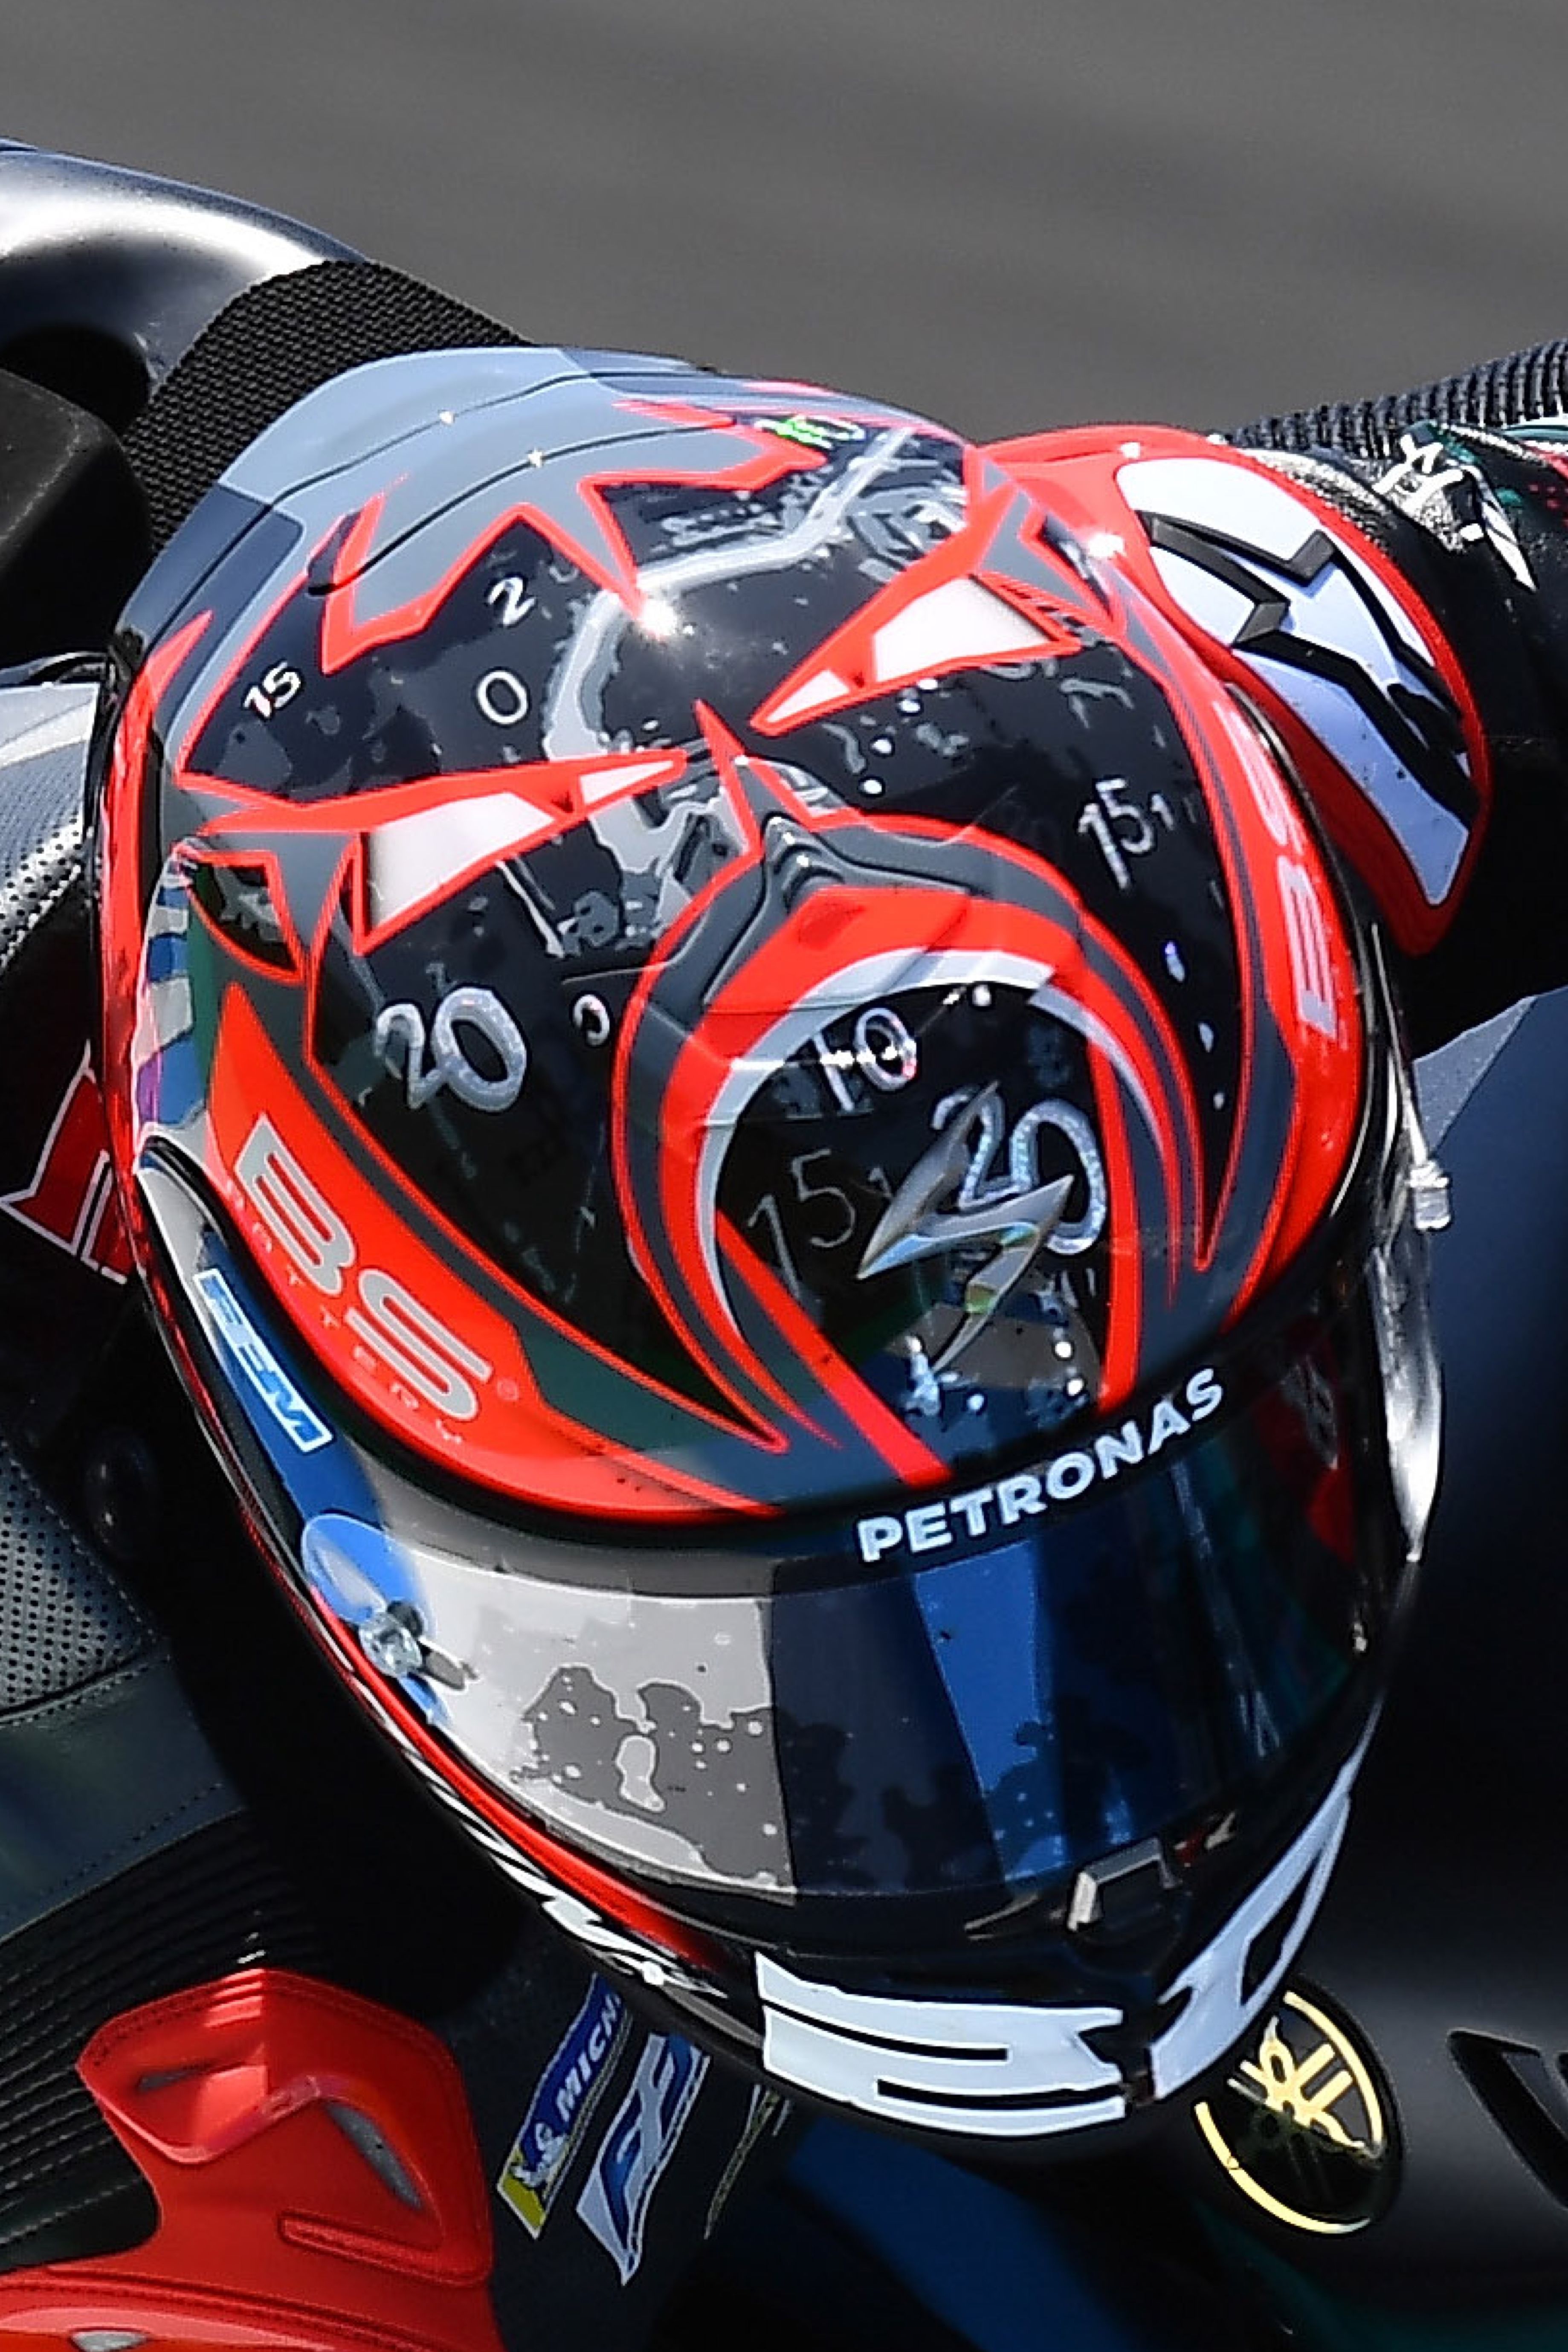 R1 Air Quartararo Replica. Helmet, Riding gear, Motorbike art